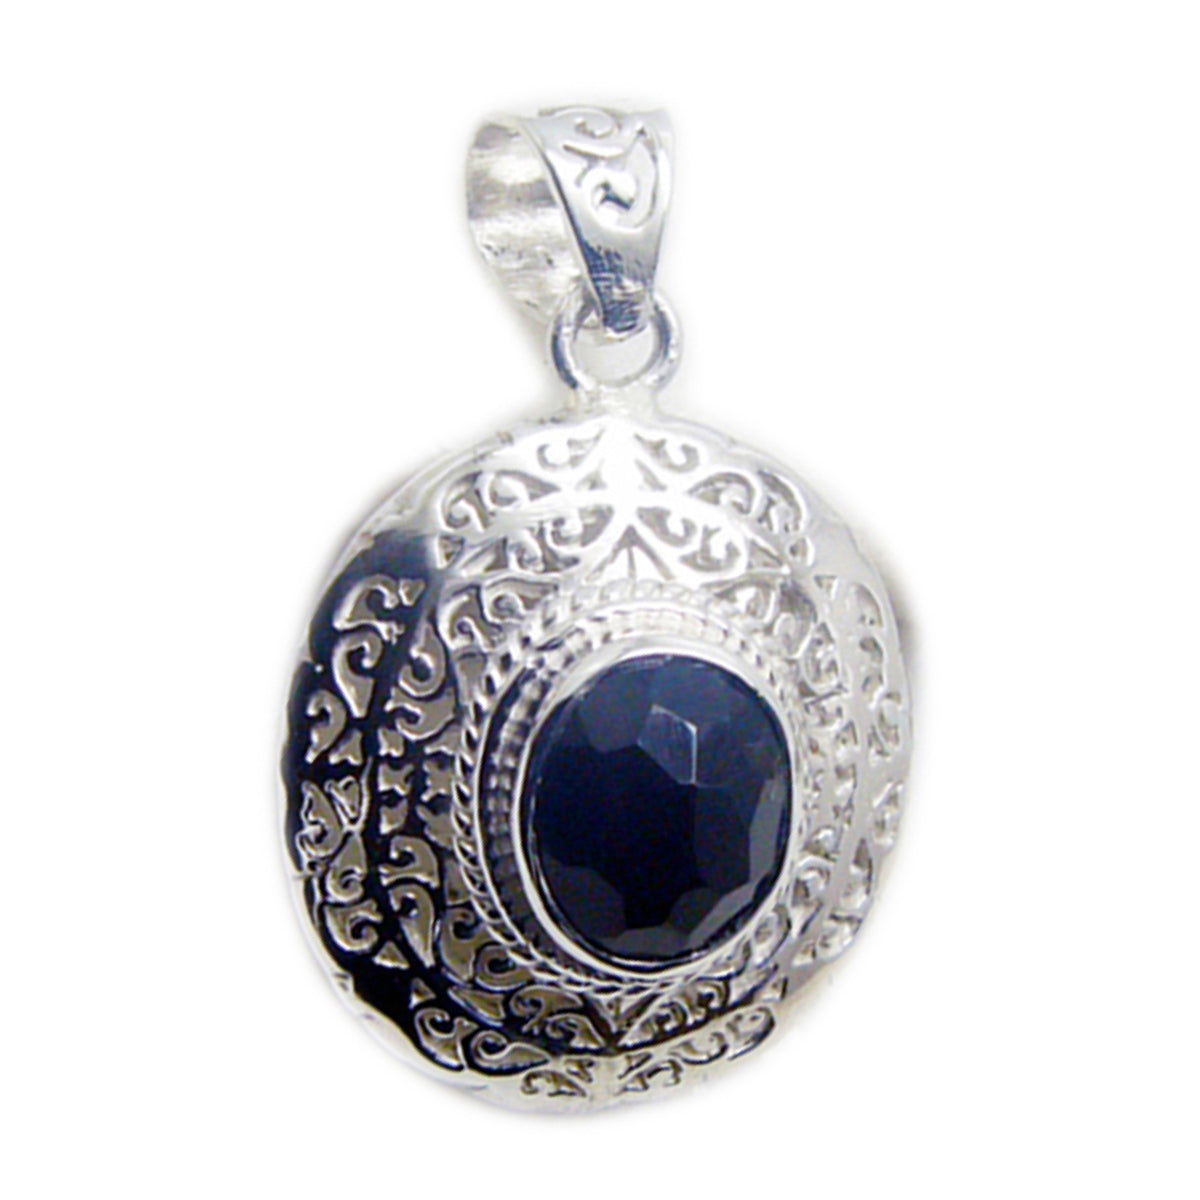 riyo belle pierre précieuse ovale damier noir onyx noir pendentif en argent sterling cadeau pour les femmes